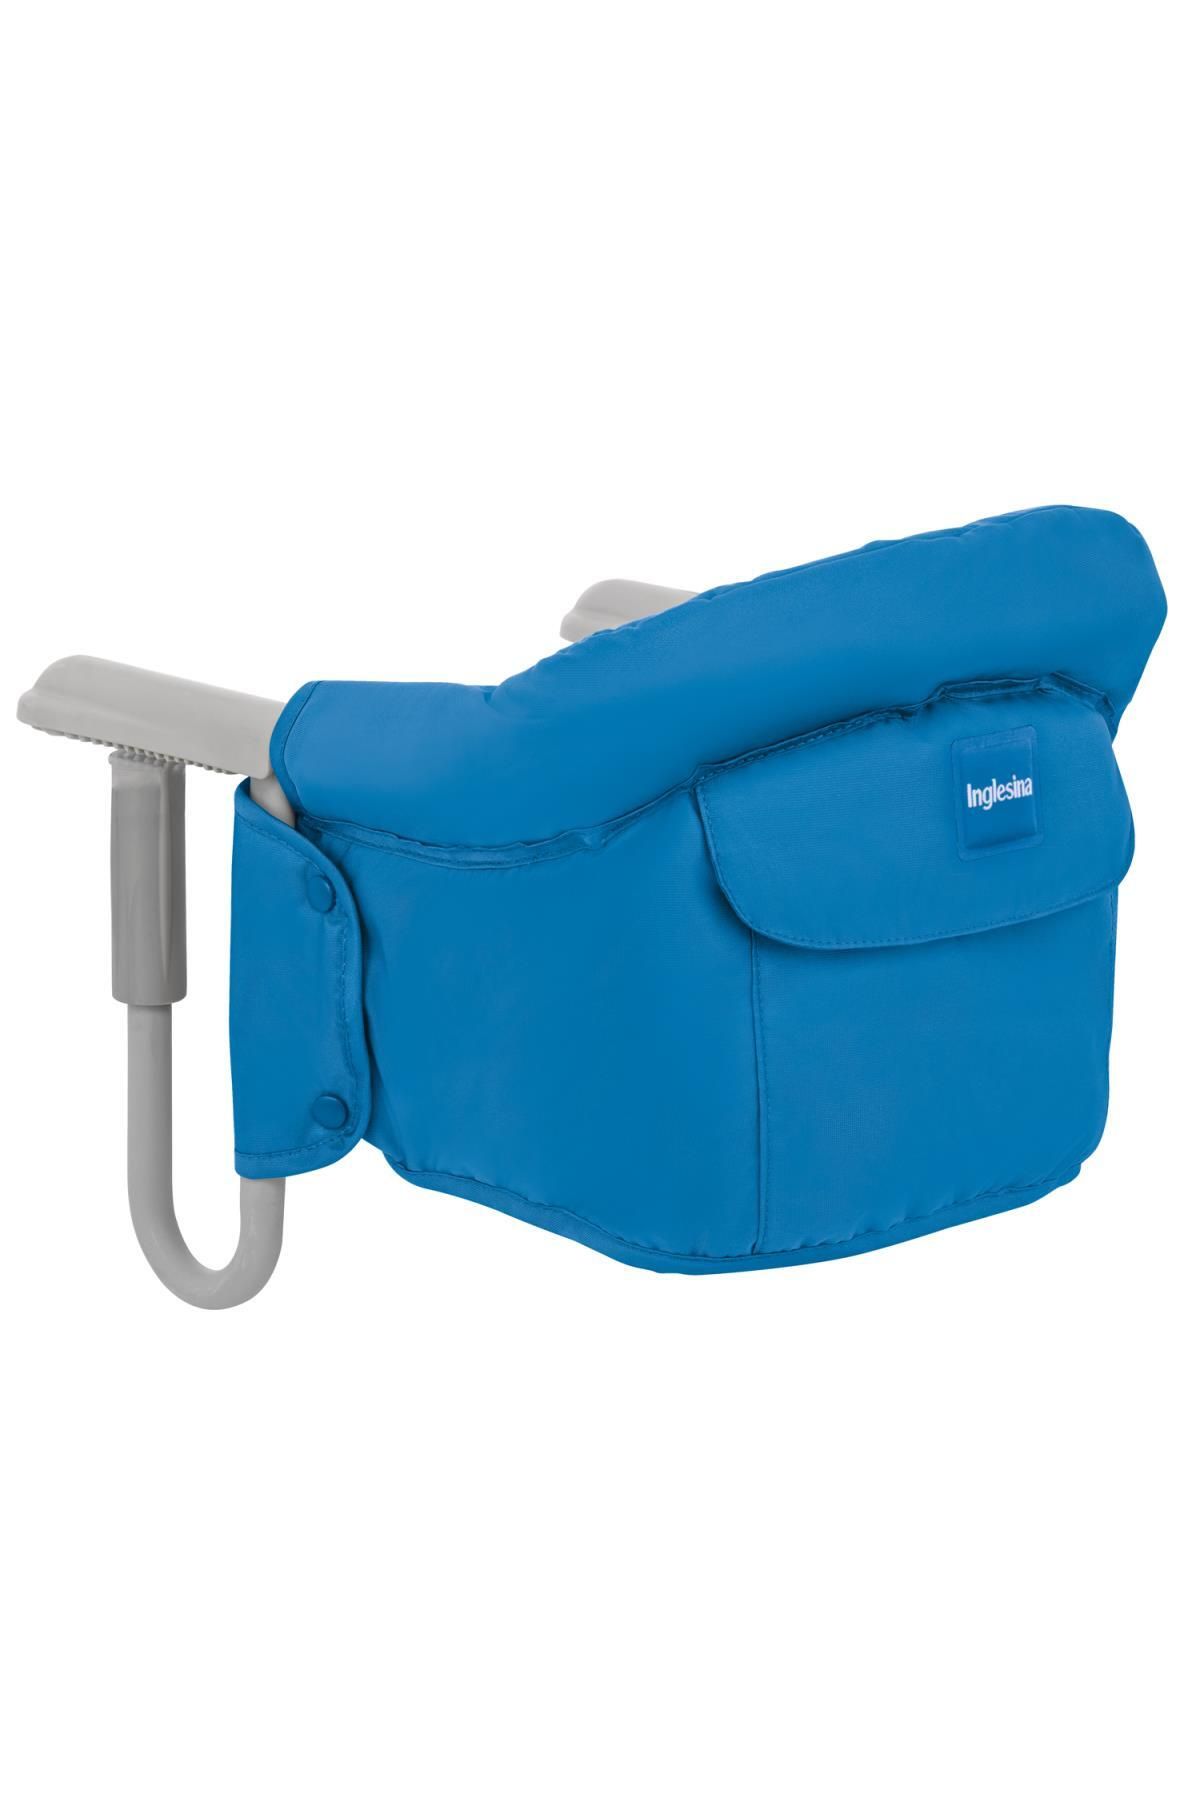 Inglesina Inglesina Fast Masaya Takılan Taşınabilir Mama Sandalyesi - Light Blue 58280